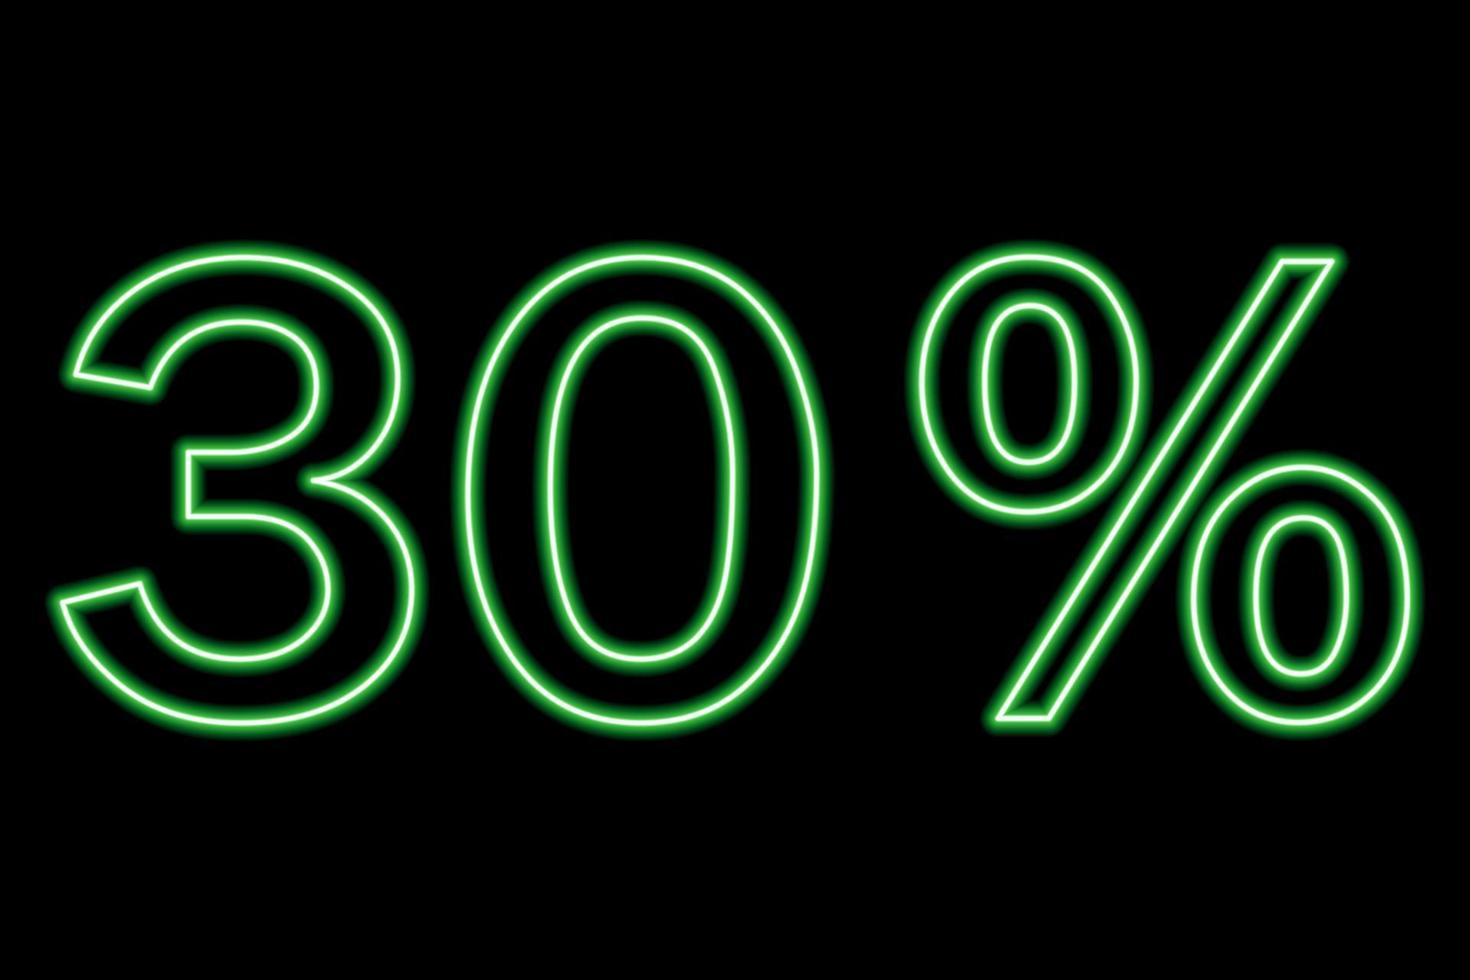 Inscripción del 30 por ciento en un fondo negro. línea verde en estilo neón. vector